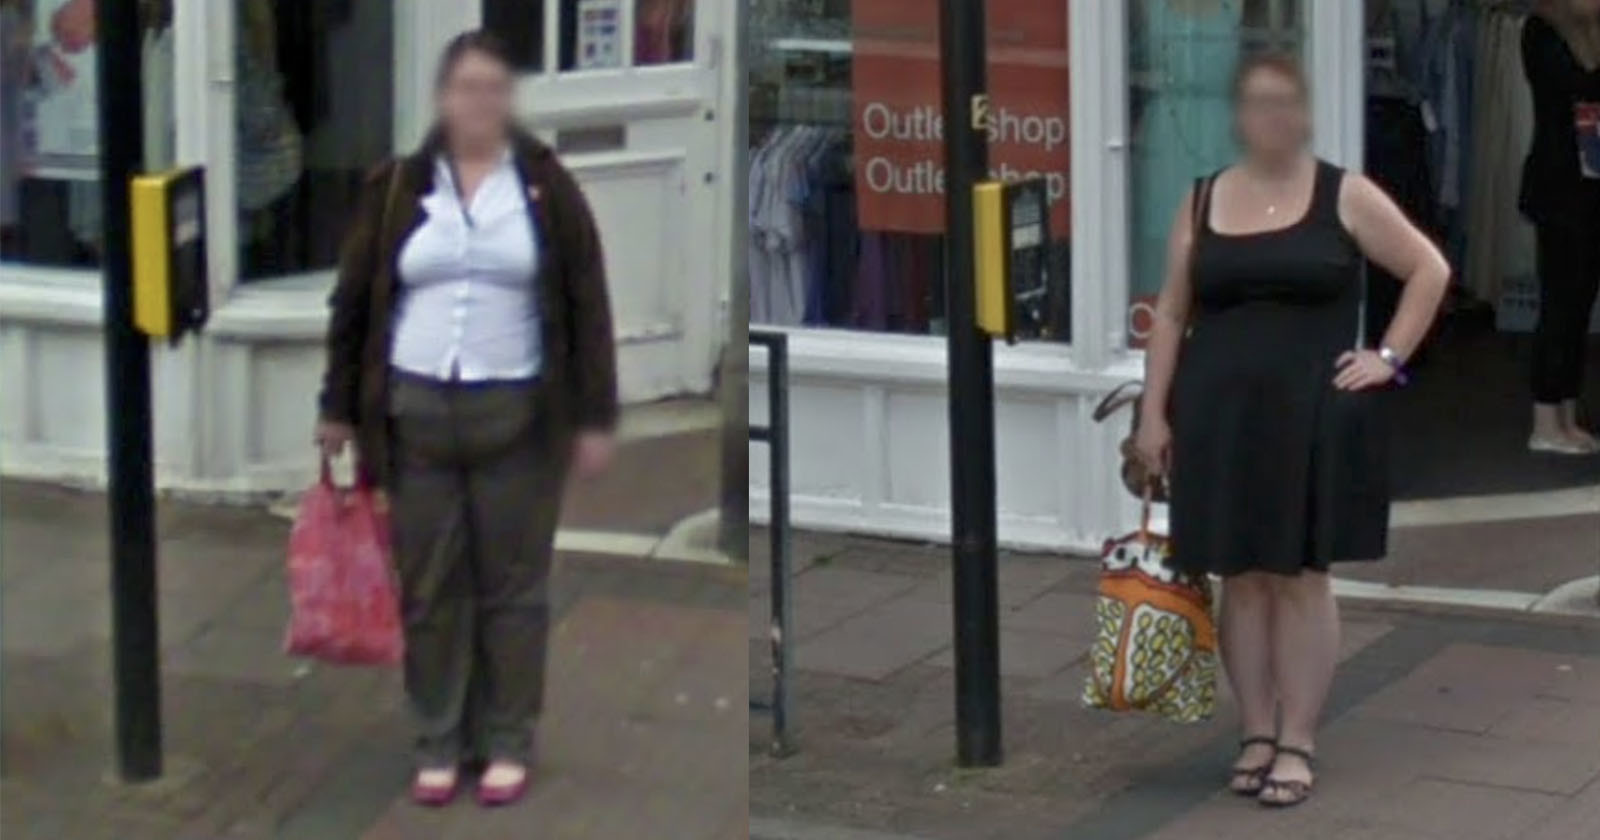  google street view captures woman exact same 